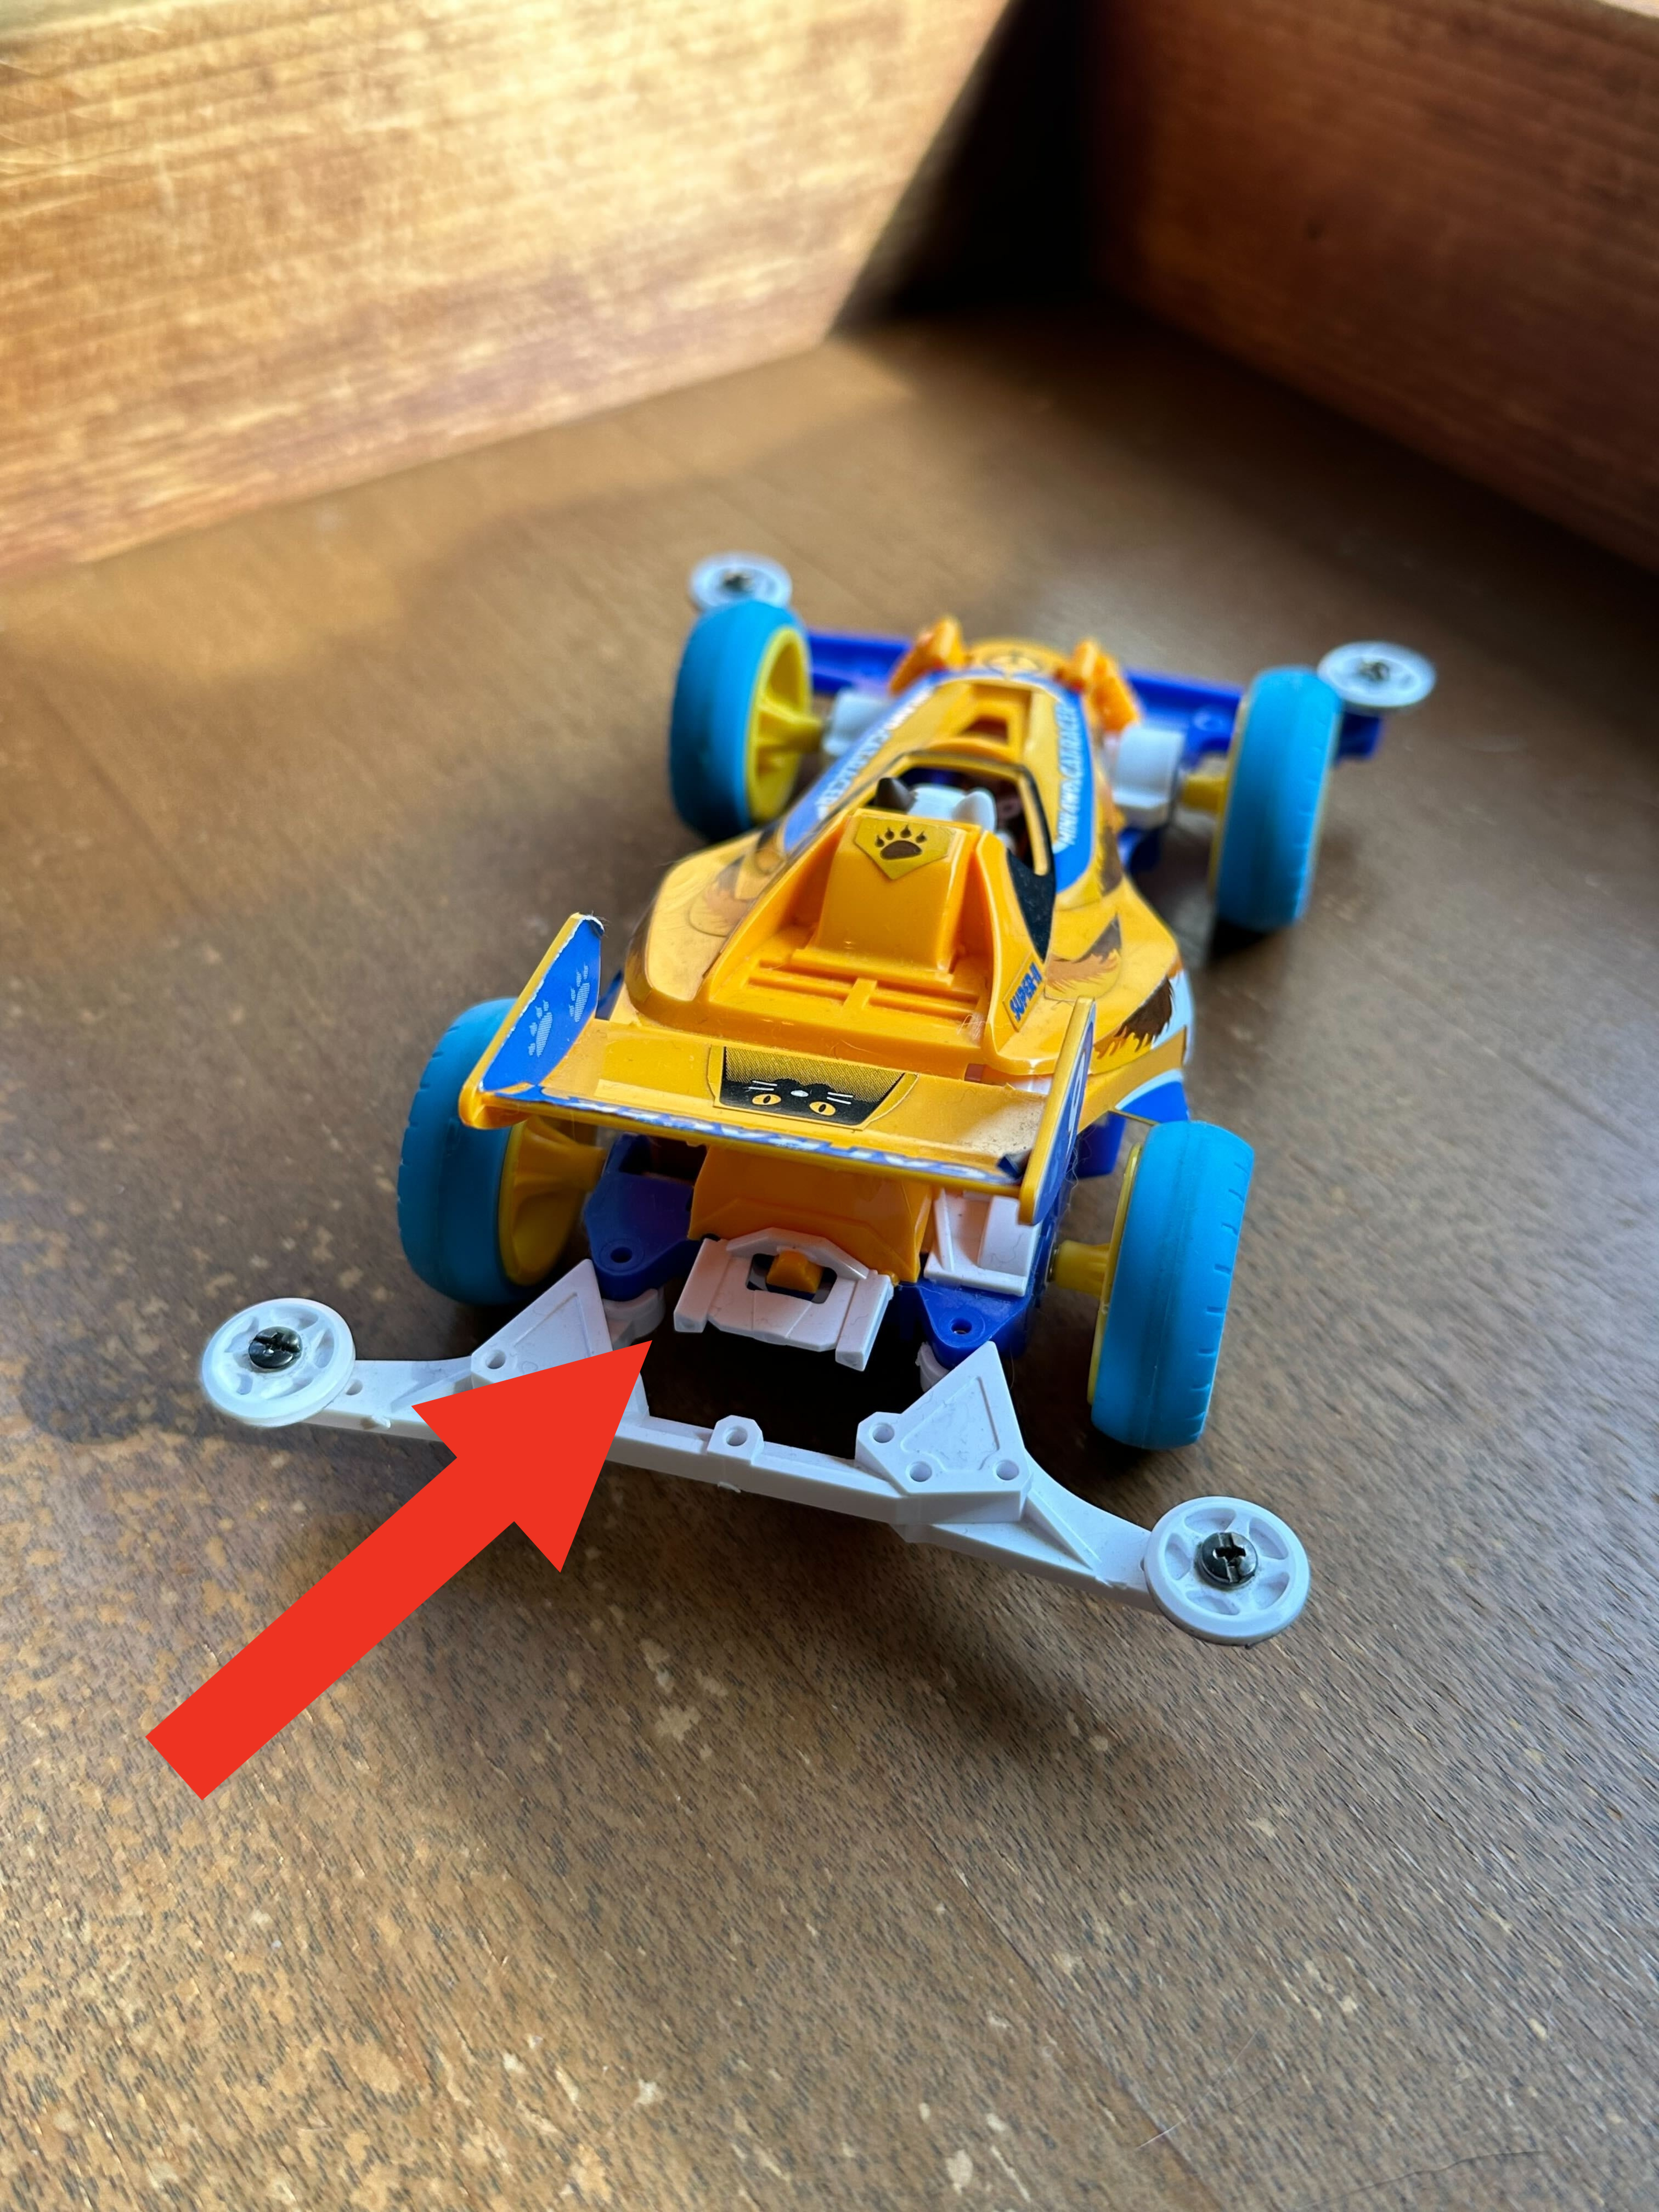 プラスチック製の玩具レースカーが木の表面に置かれています。